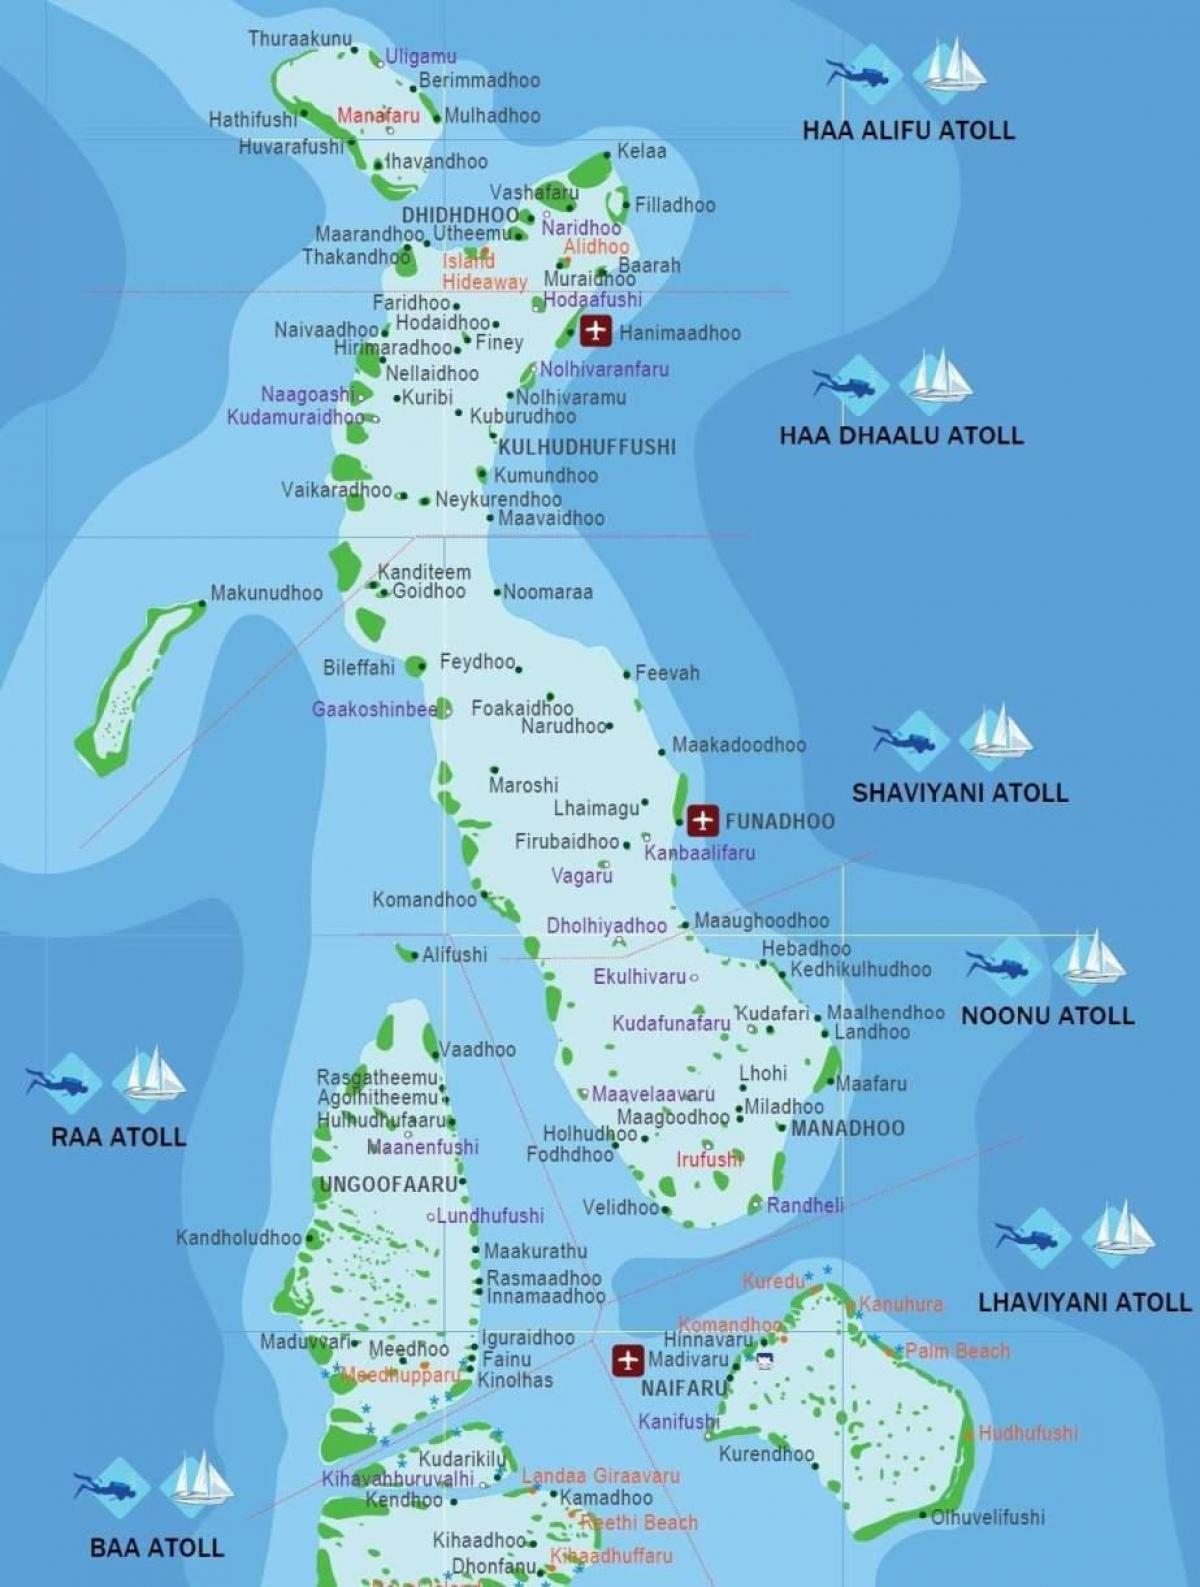 hartă completă a maldive